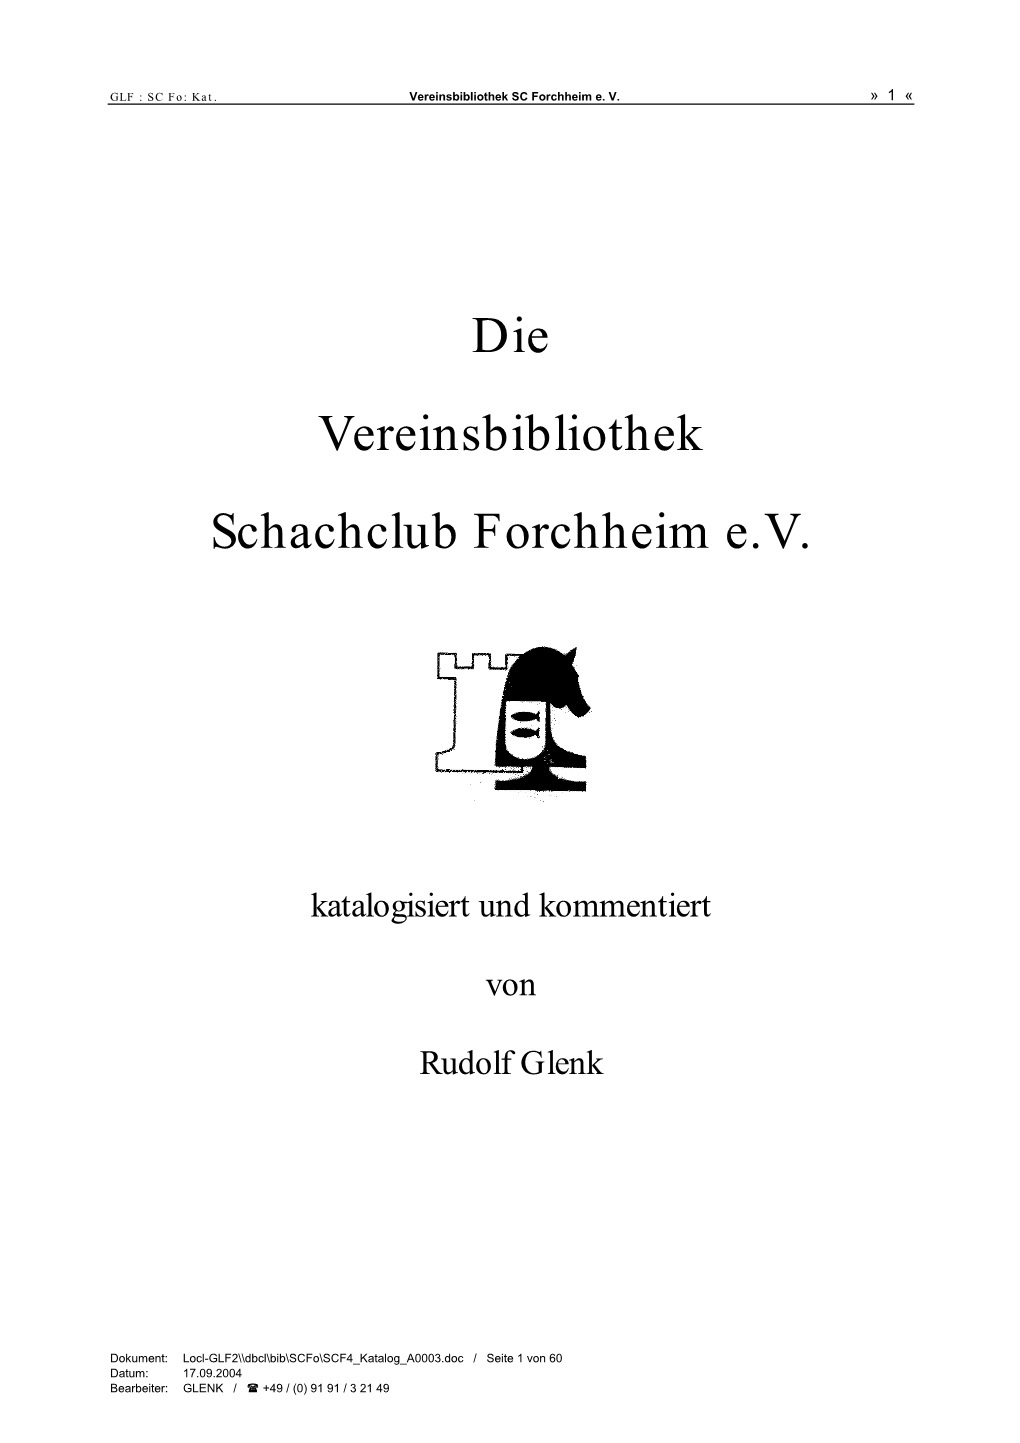 Die Vereinsbibliothek Schachclub Forchheim E.V